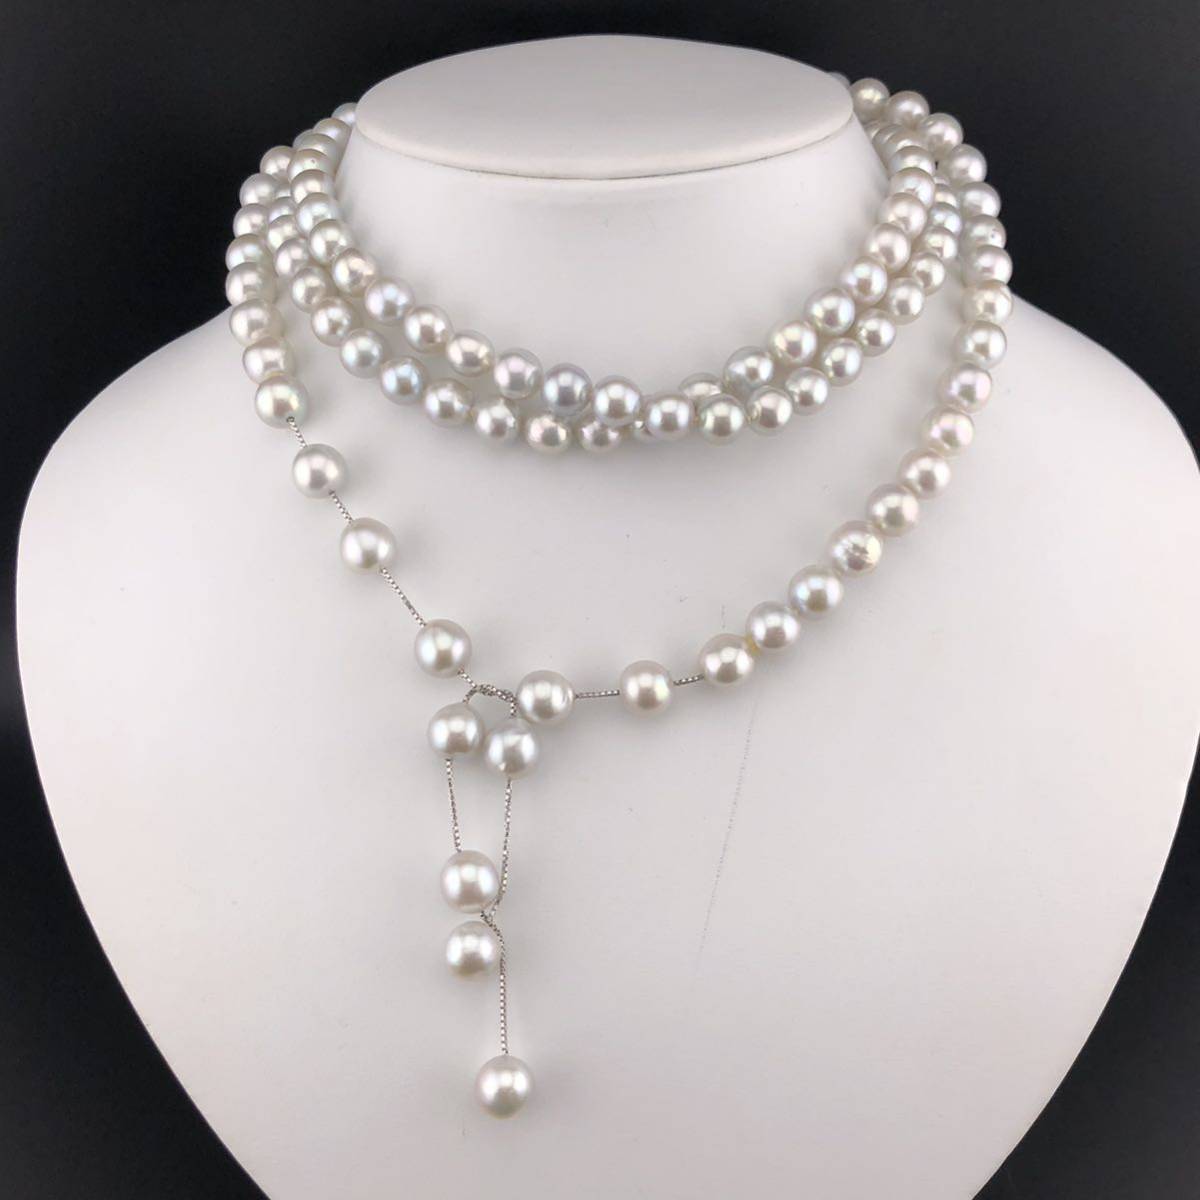 人気提案 ☆希少品☆【TASAKI】天然パールネックレス E-0667 8.0mm〜8.5mm necklace） pearl 約106g（アコヤ真珠 全長約124cm アコヤ真珠